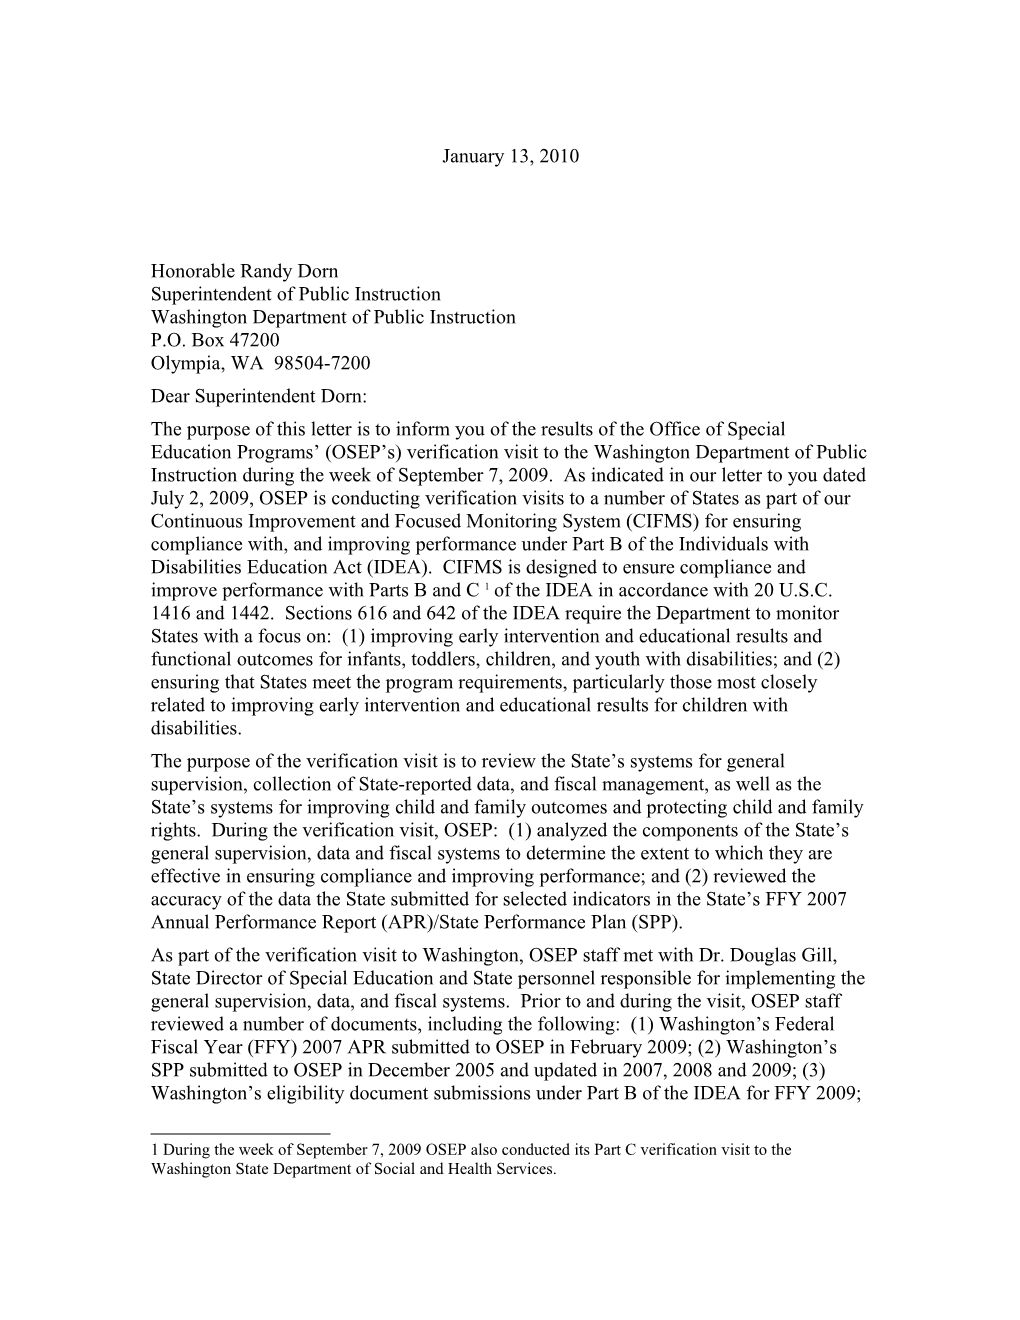 Washington 2009 Part B Verification Visit Letter (MS WORD)